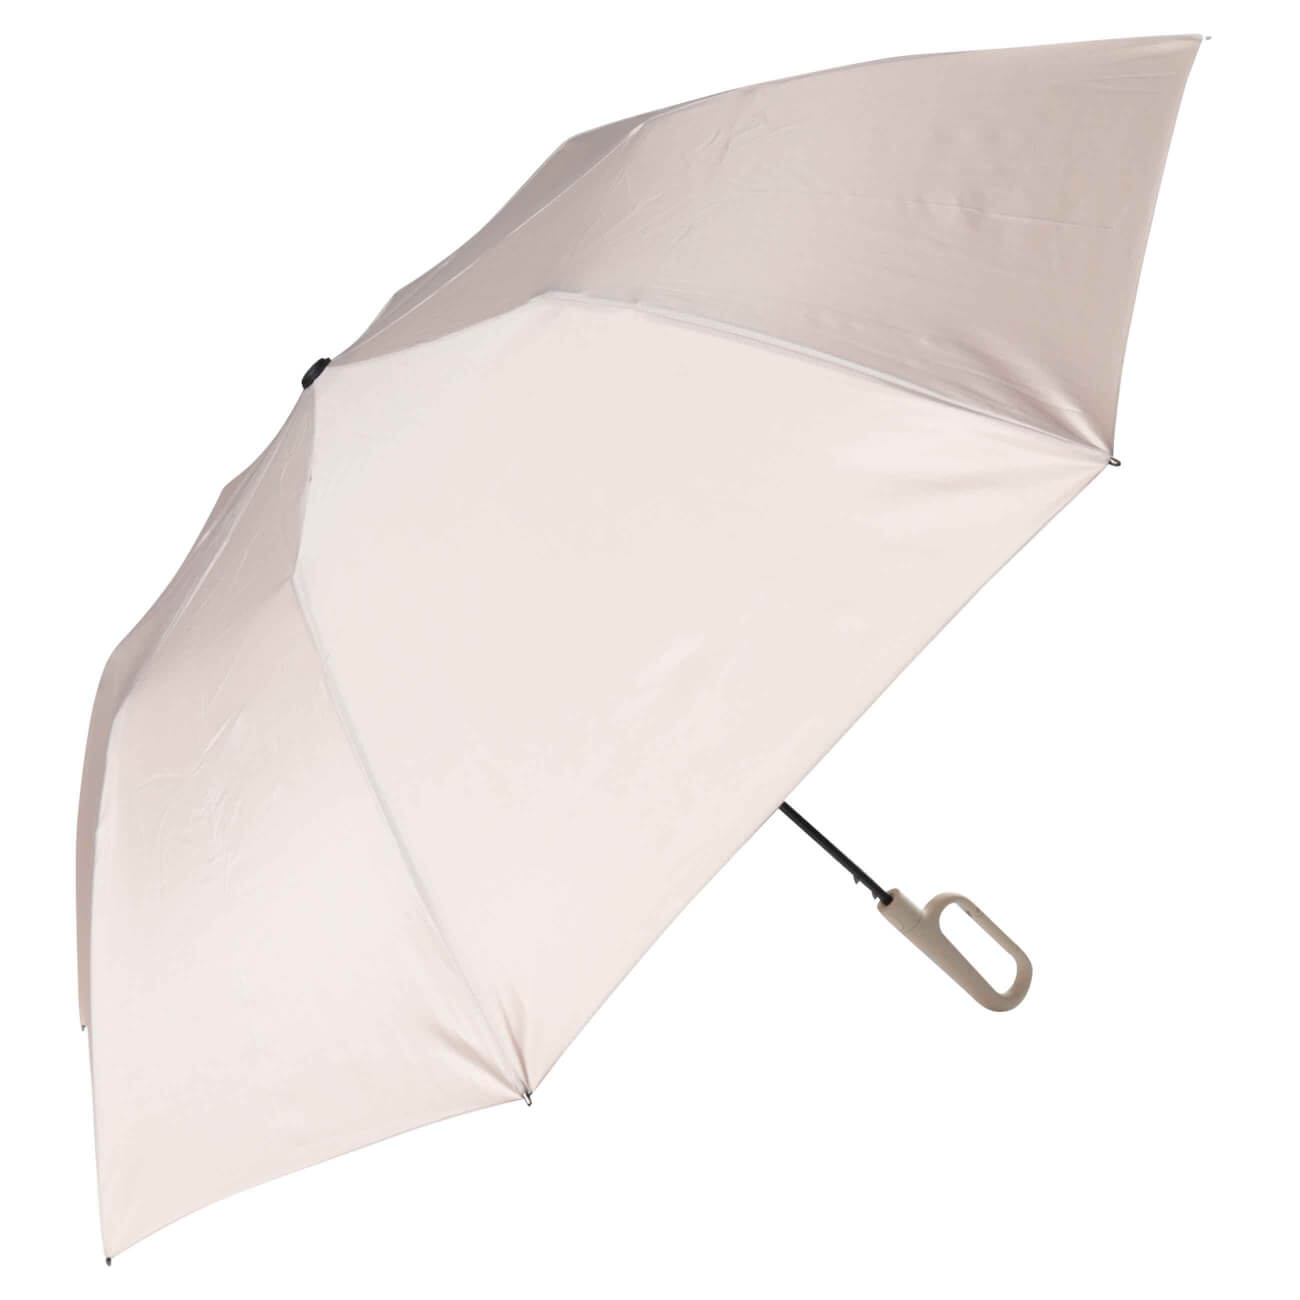 Зонт, 70 см, складной, полу-автоматический, с ручкой-карабином, эпонж, бежевый, Rainfall